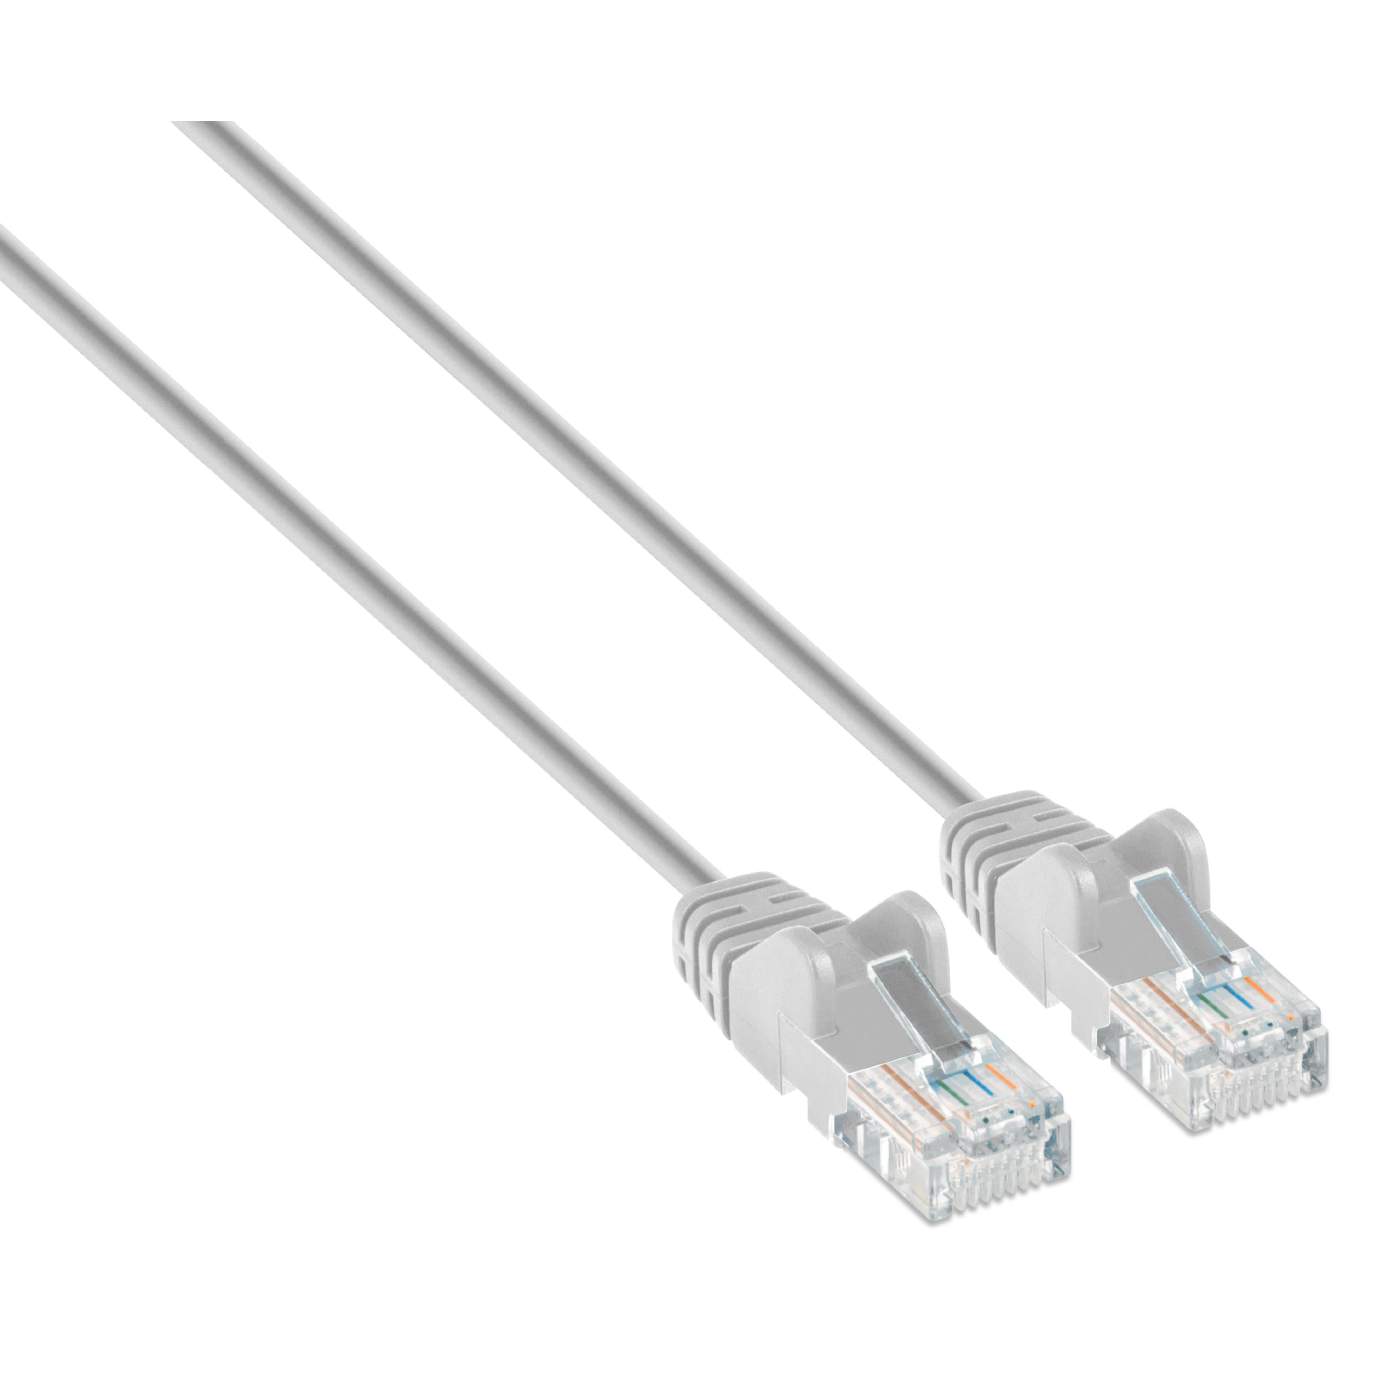 Câbles réseau INTELLINET Cable RJ45 cat 6 SFTP 1m gris - Scoop gaming